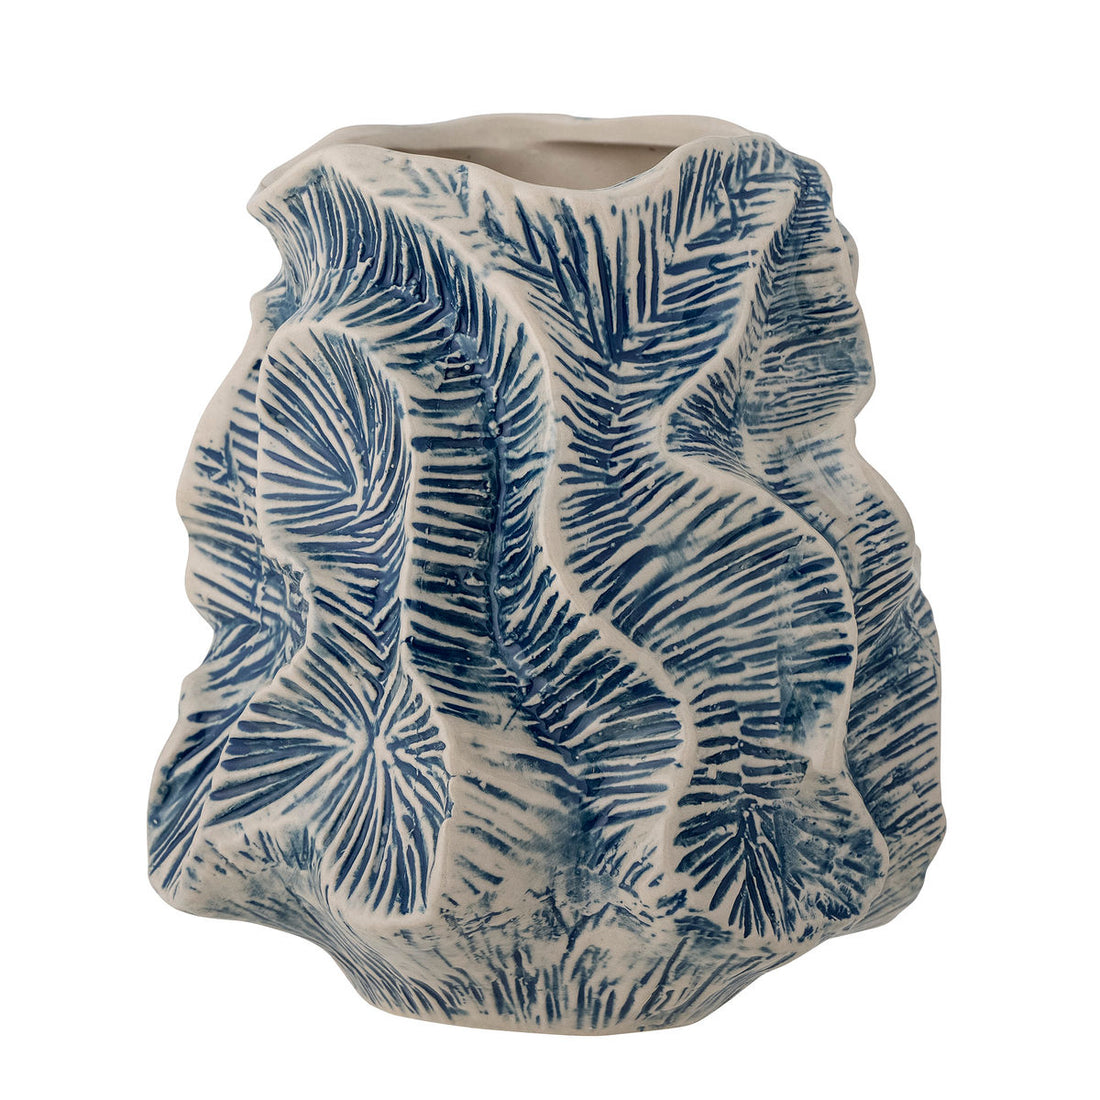 Creative Collection Guvi Vase, Blue, Stoneware